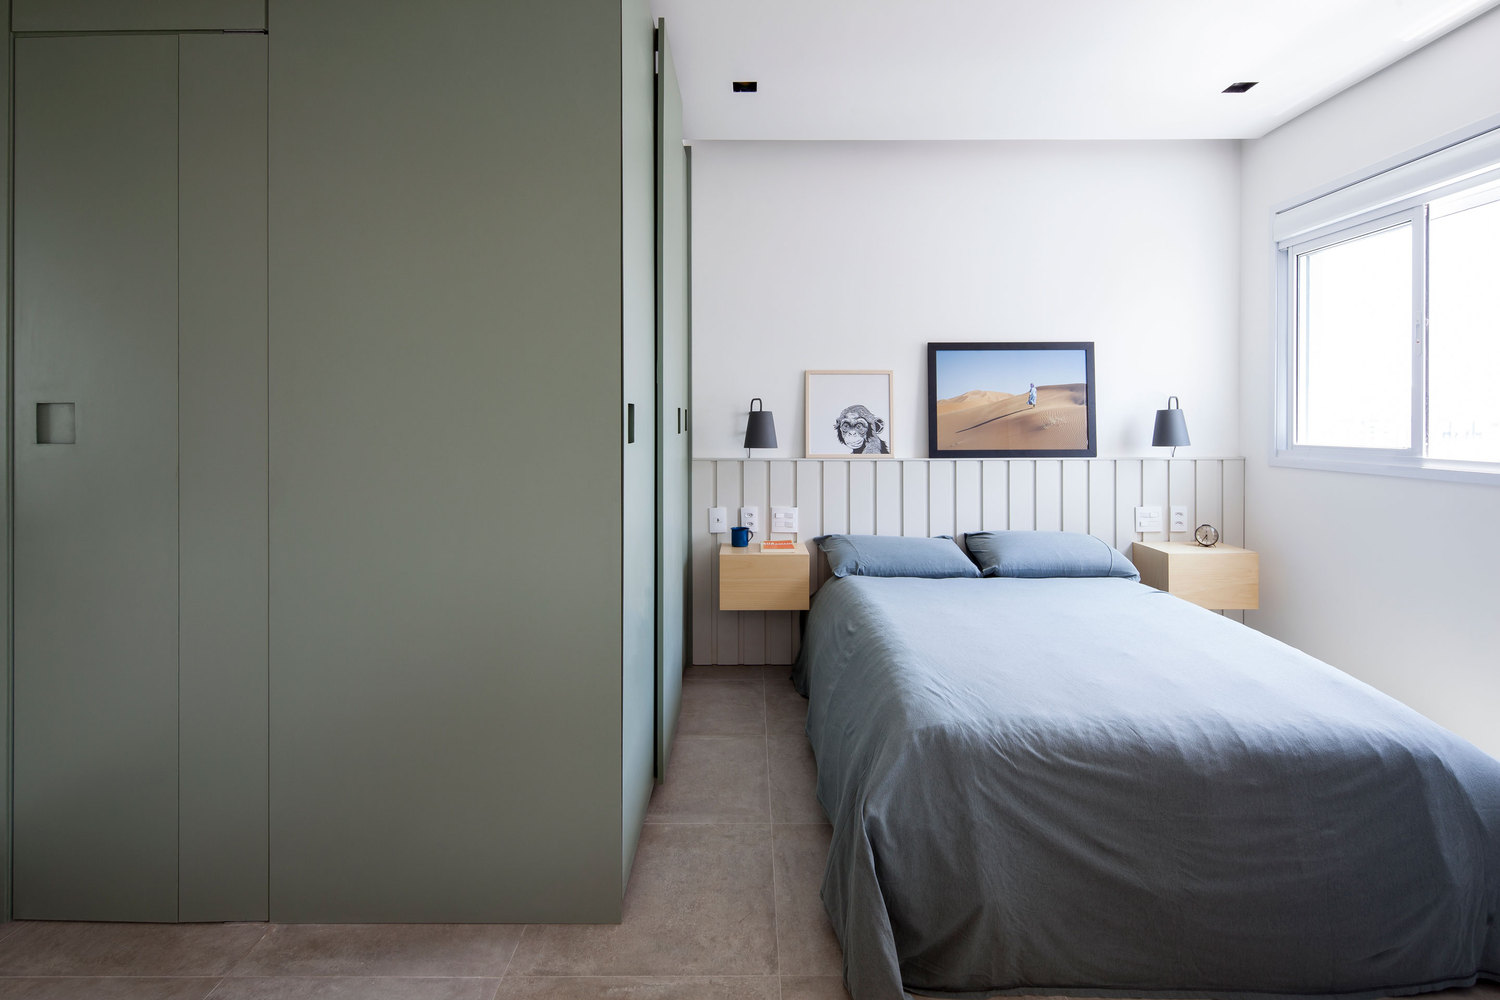 Giường ngủ thiết kế đơn giản với tone màu xám - trắng, cạnh ô cửa sổ đầy nắng ấm, nội thất bố trí cân xứng cho cảm giác hải hòa.